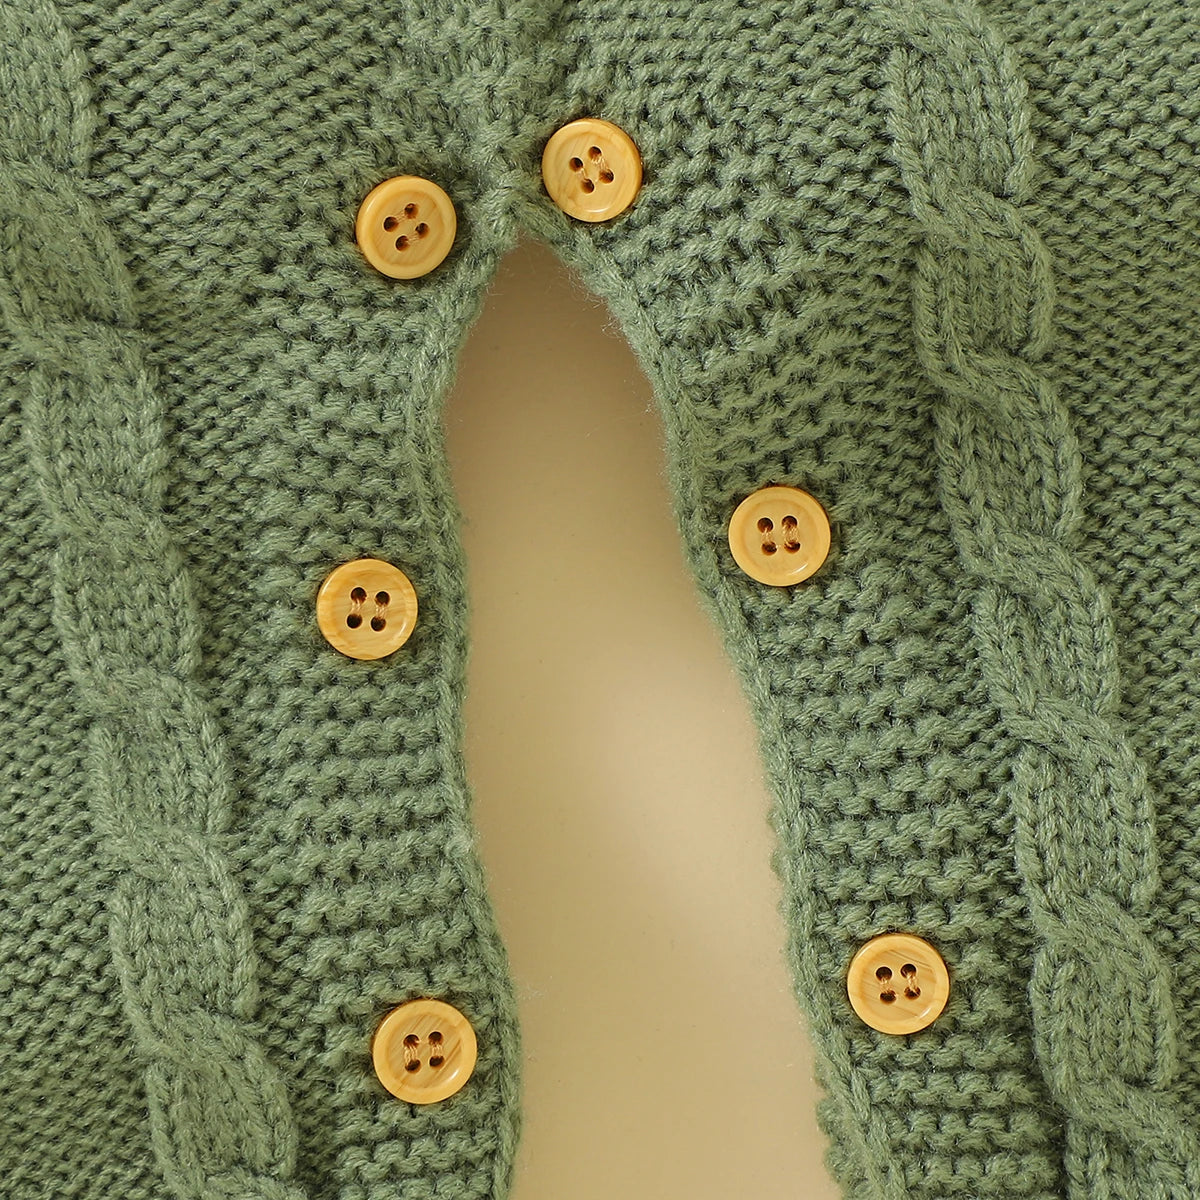 Cozy Knit Baby Bodysuit & Hat Set - Unisex Rompers